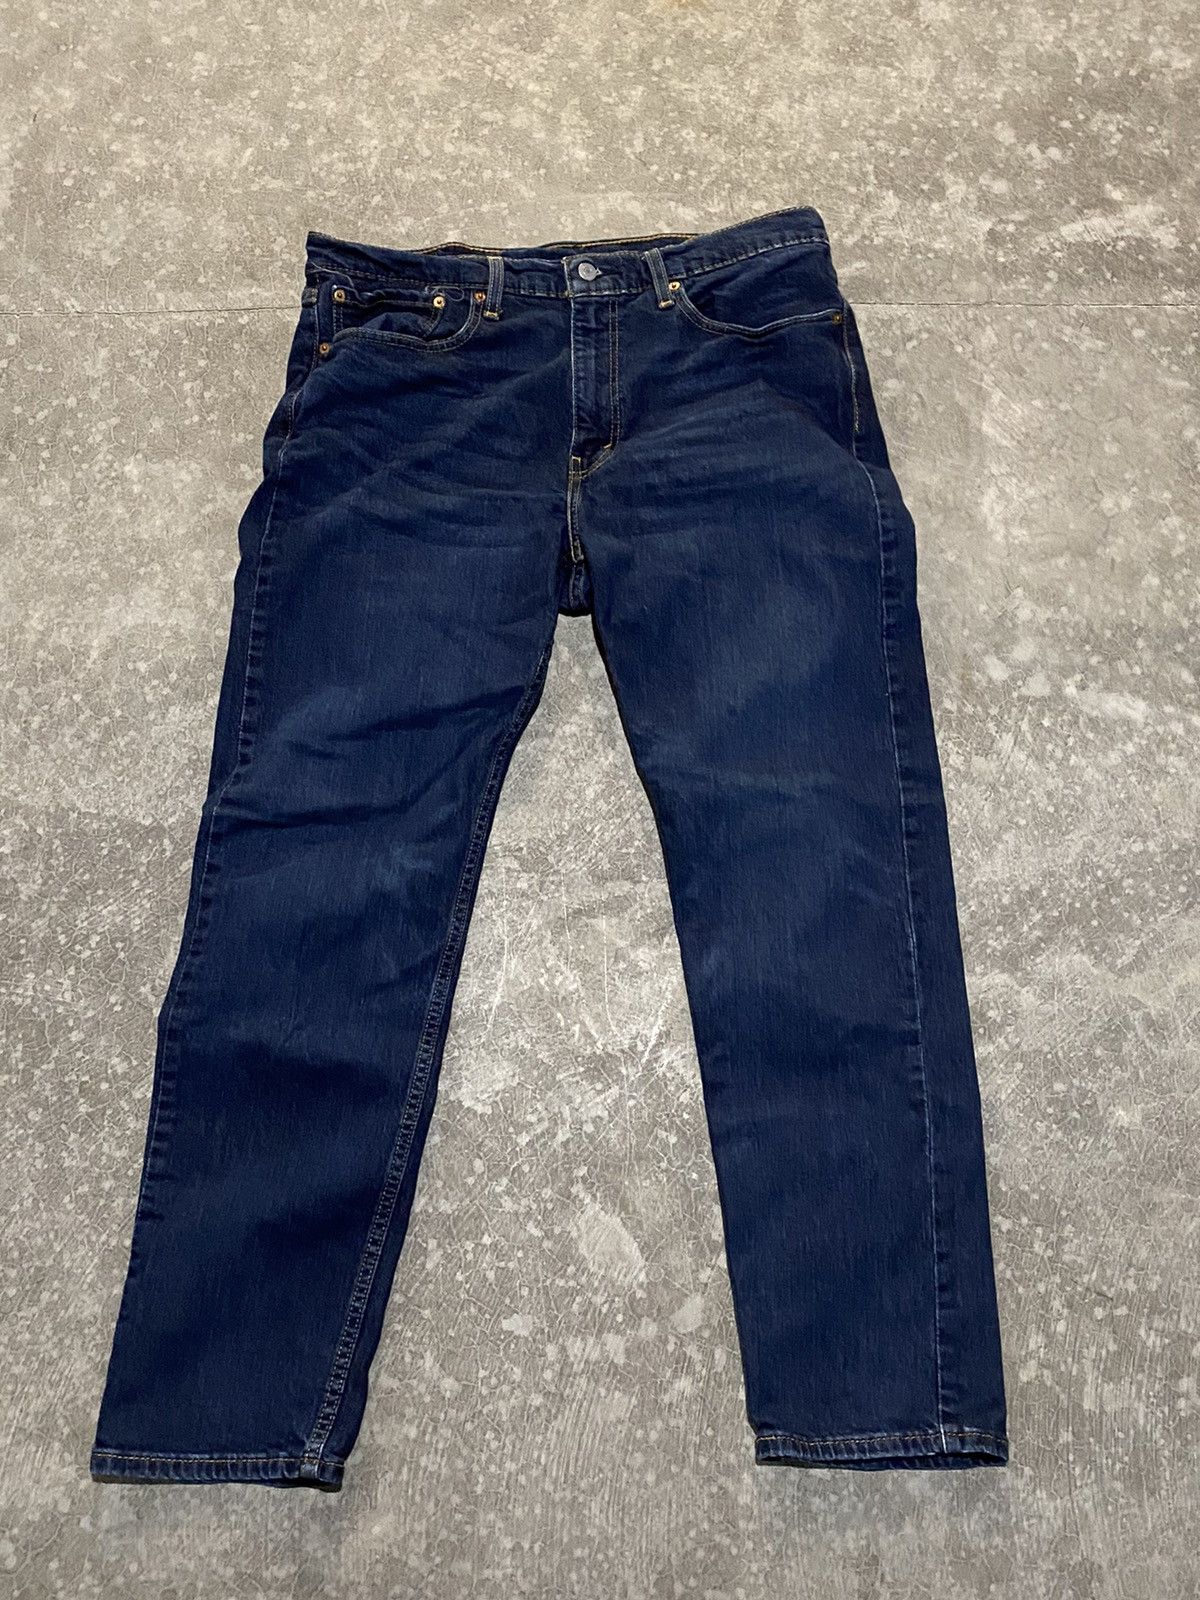 Vintage Dark Blue Levi 502 Jeans 36x32 Size US 36 / EU 52 - 1 Preview